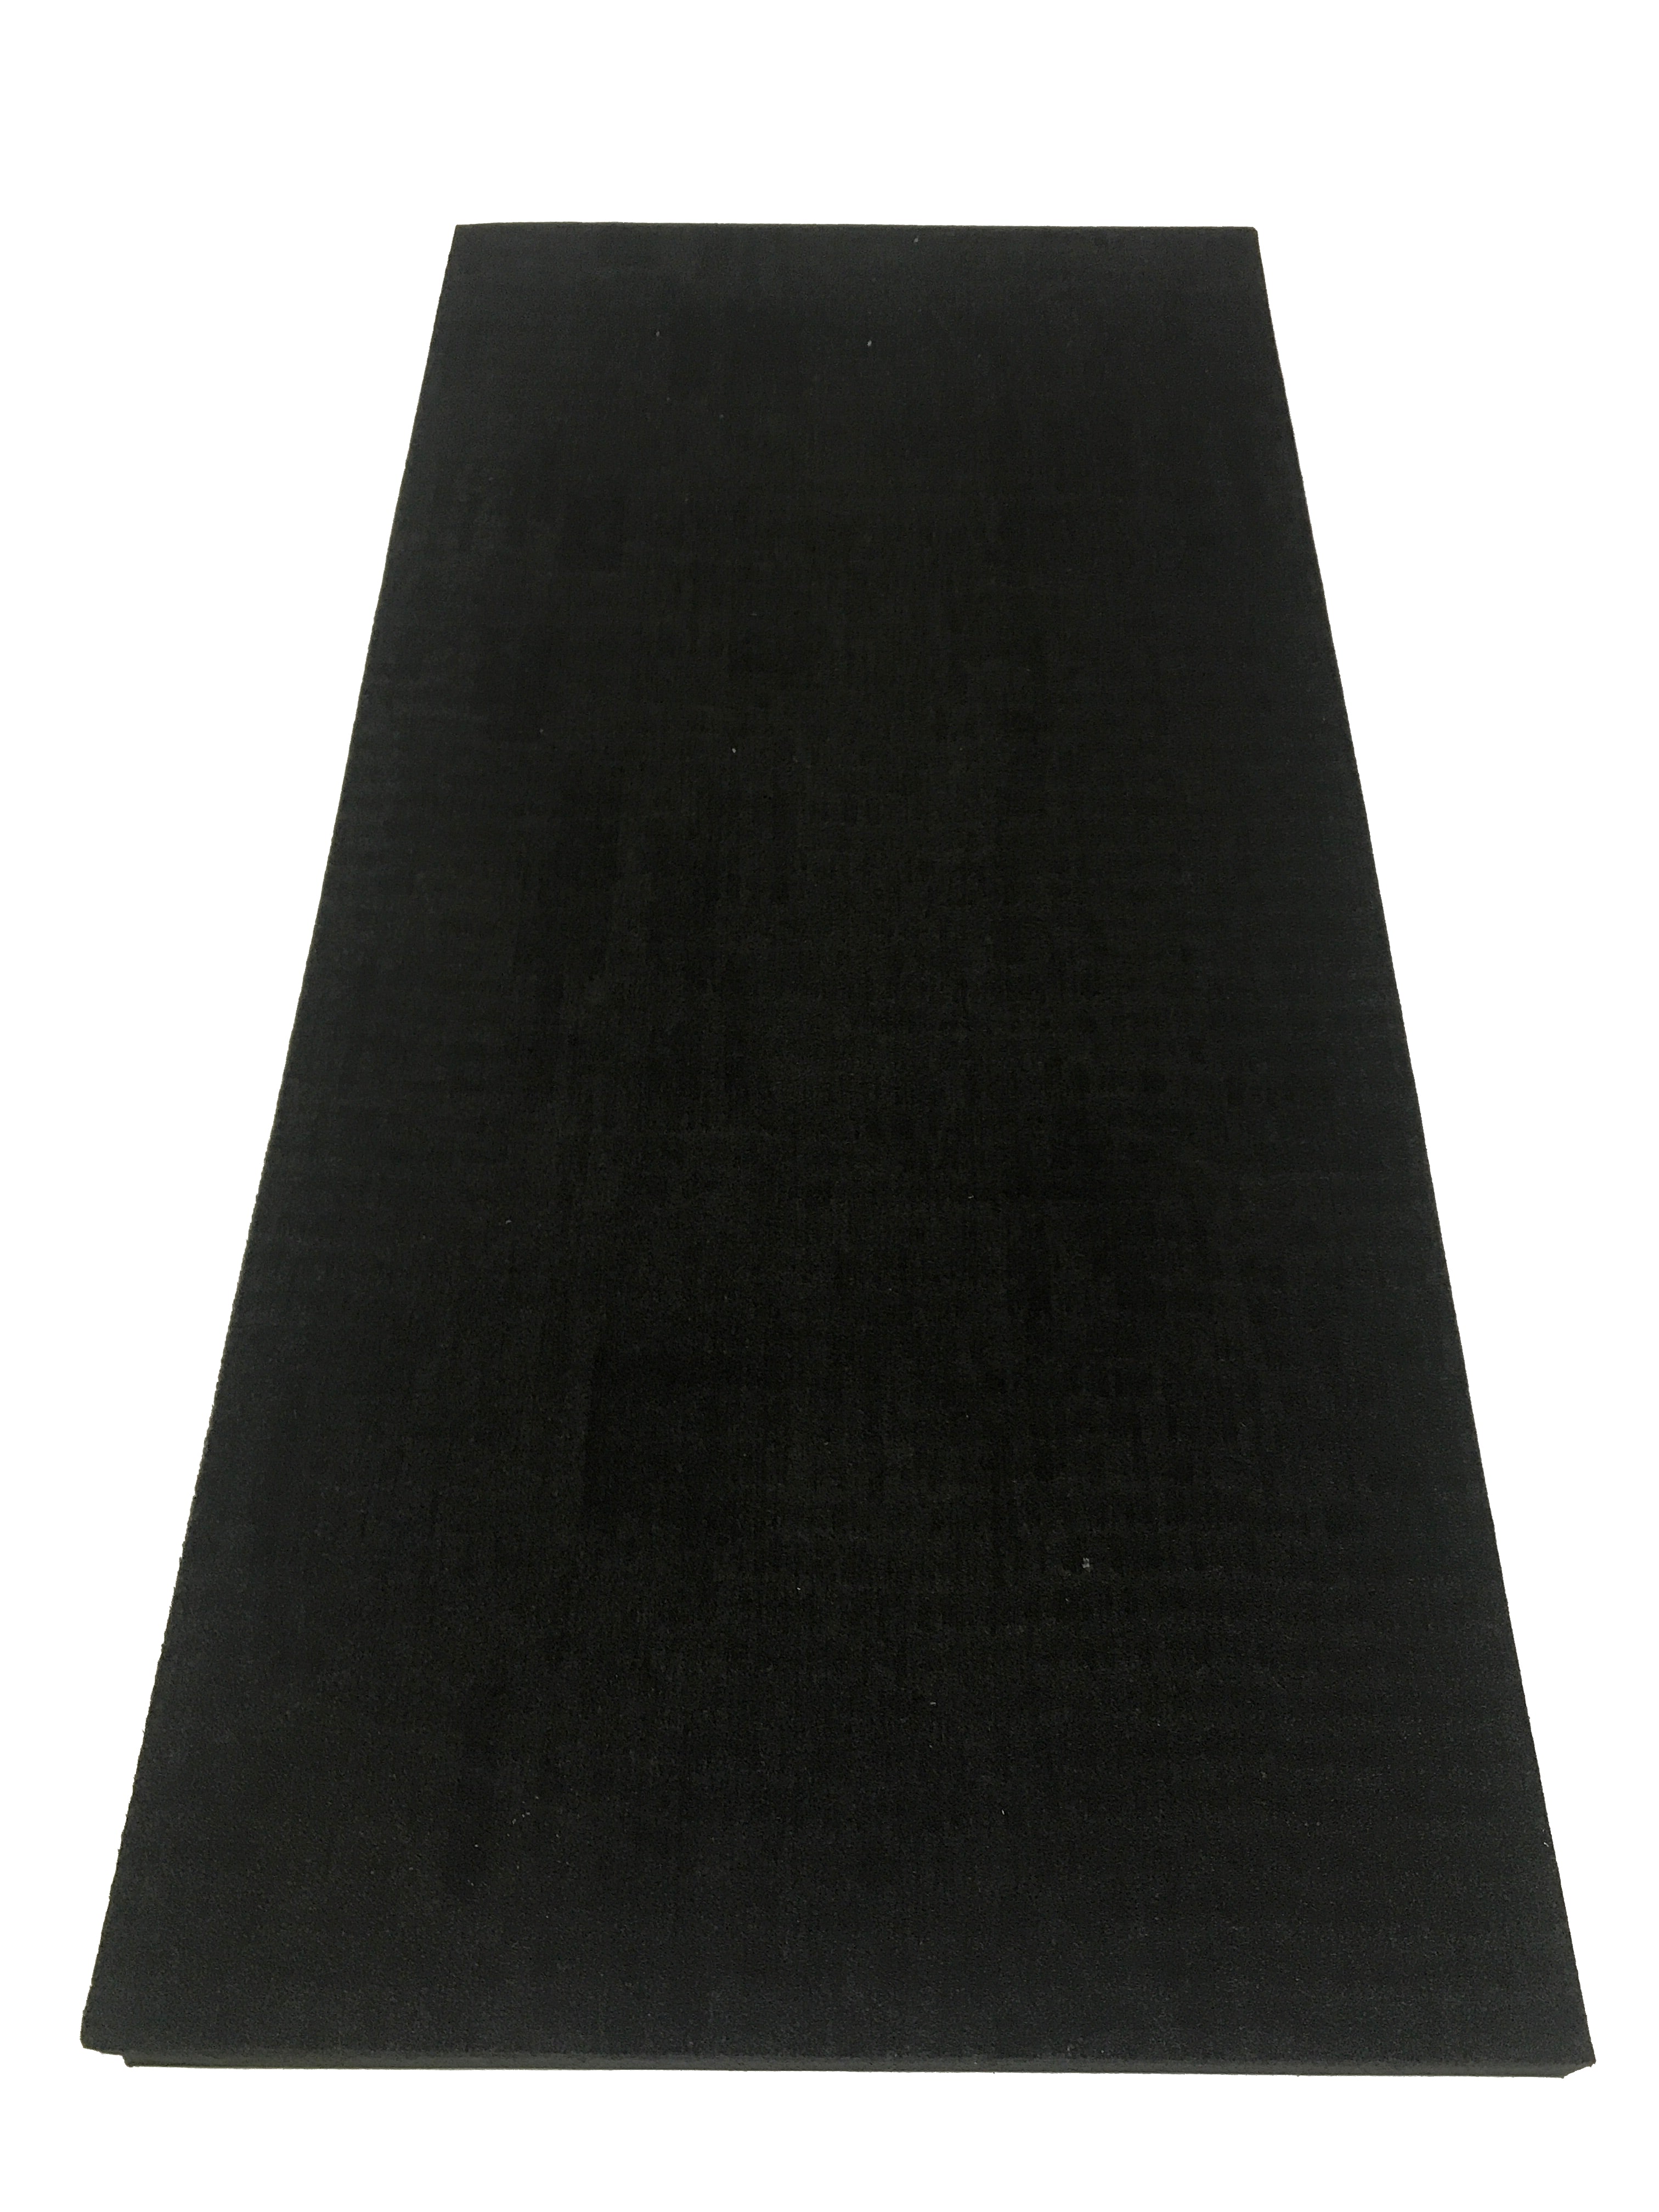 Silent Panel 10kg/50mm - MLV & Acoustic Foam Composite - B-Grade-3